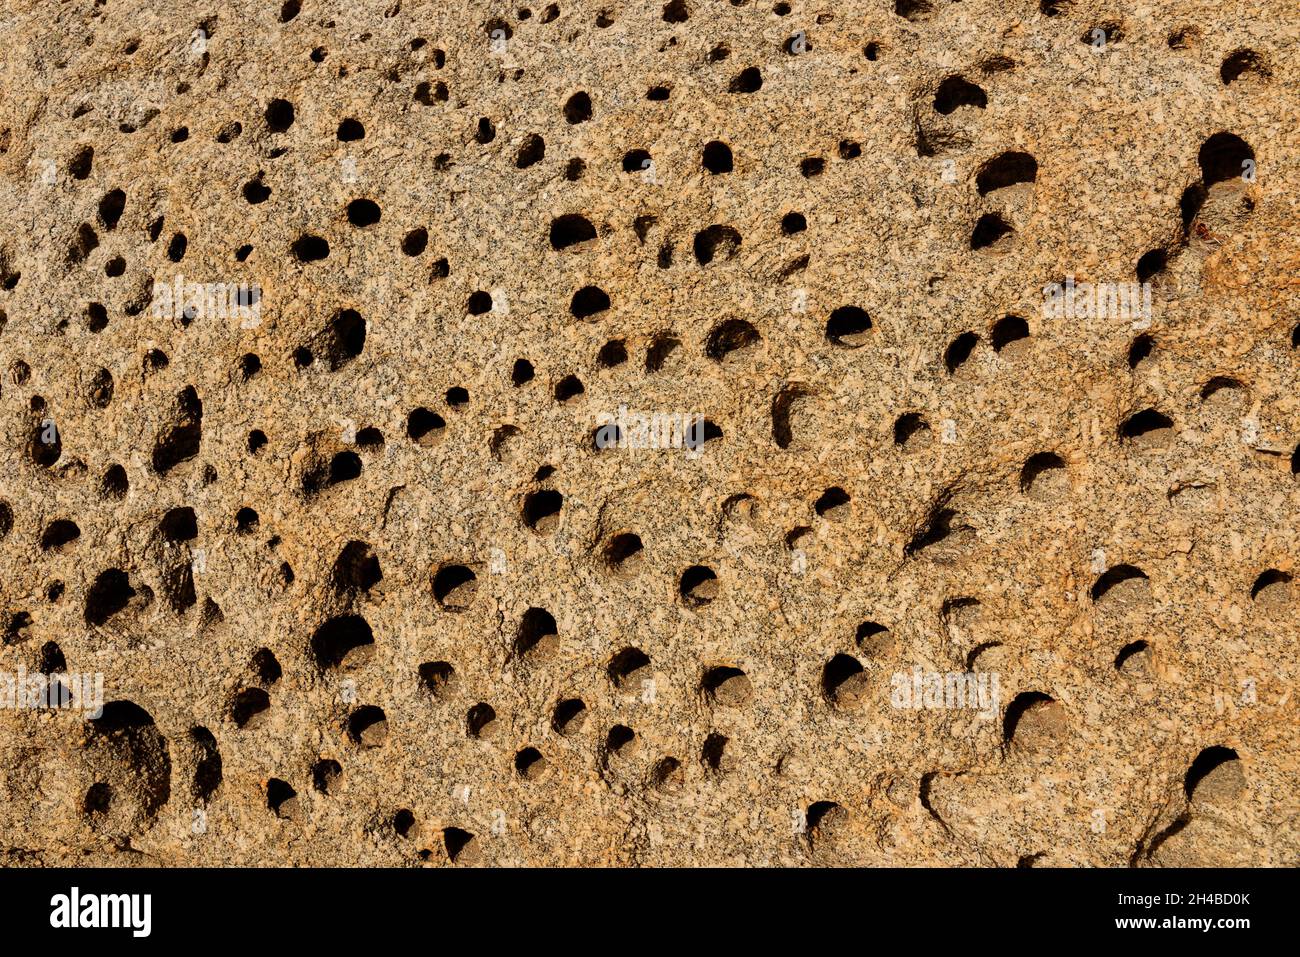 Farm Wüstenquell (Wuestenquell Guest Farm): Rocce di granito erose e perforate (Dettaglio) nel deserto del Namib, distretto Karibib, regione di Erongo, Namibia Foto Stock